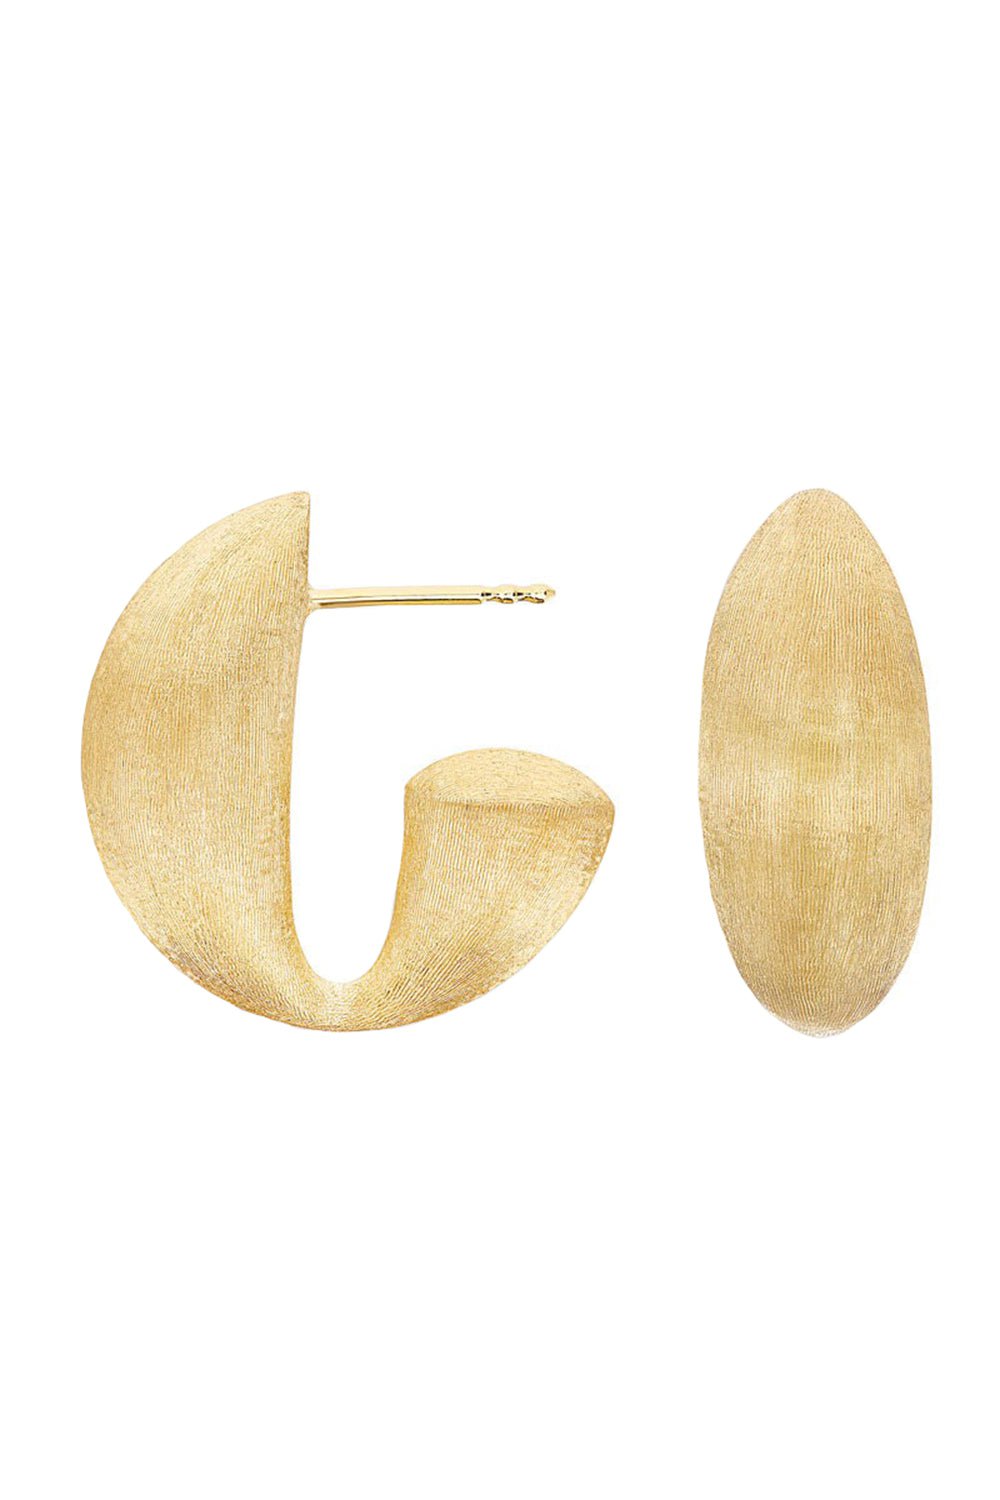 NANIS-Transformista Vintage Hoop Earrings-YELLOW GOLD